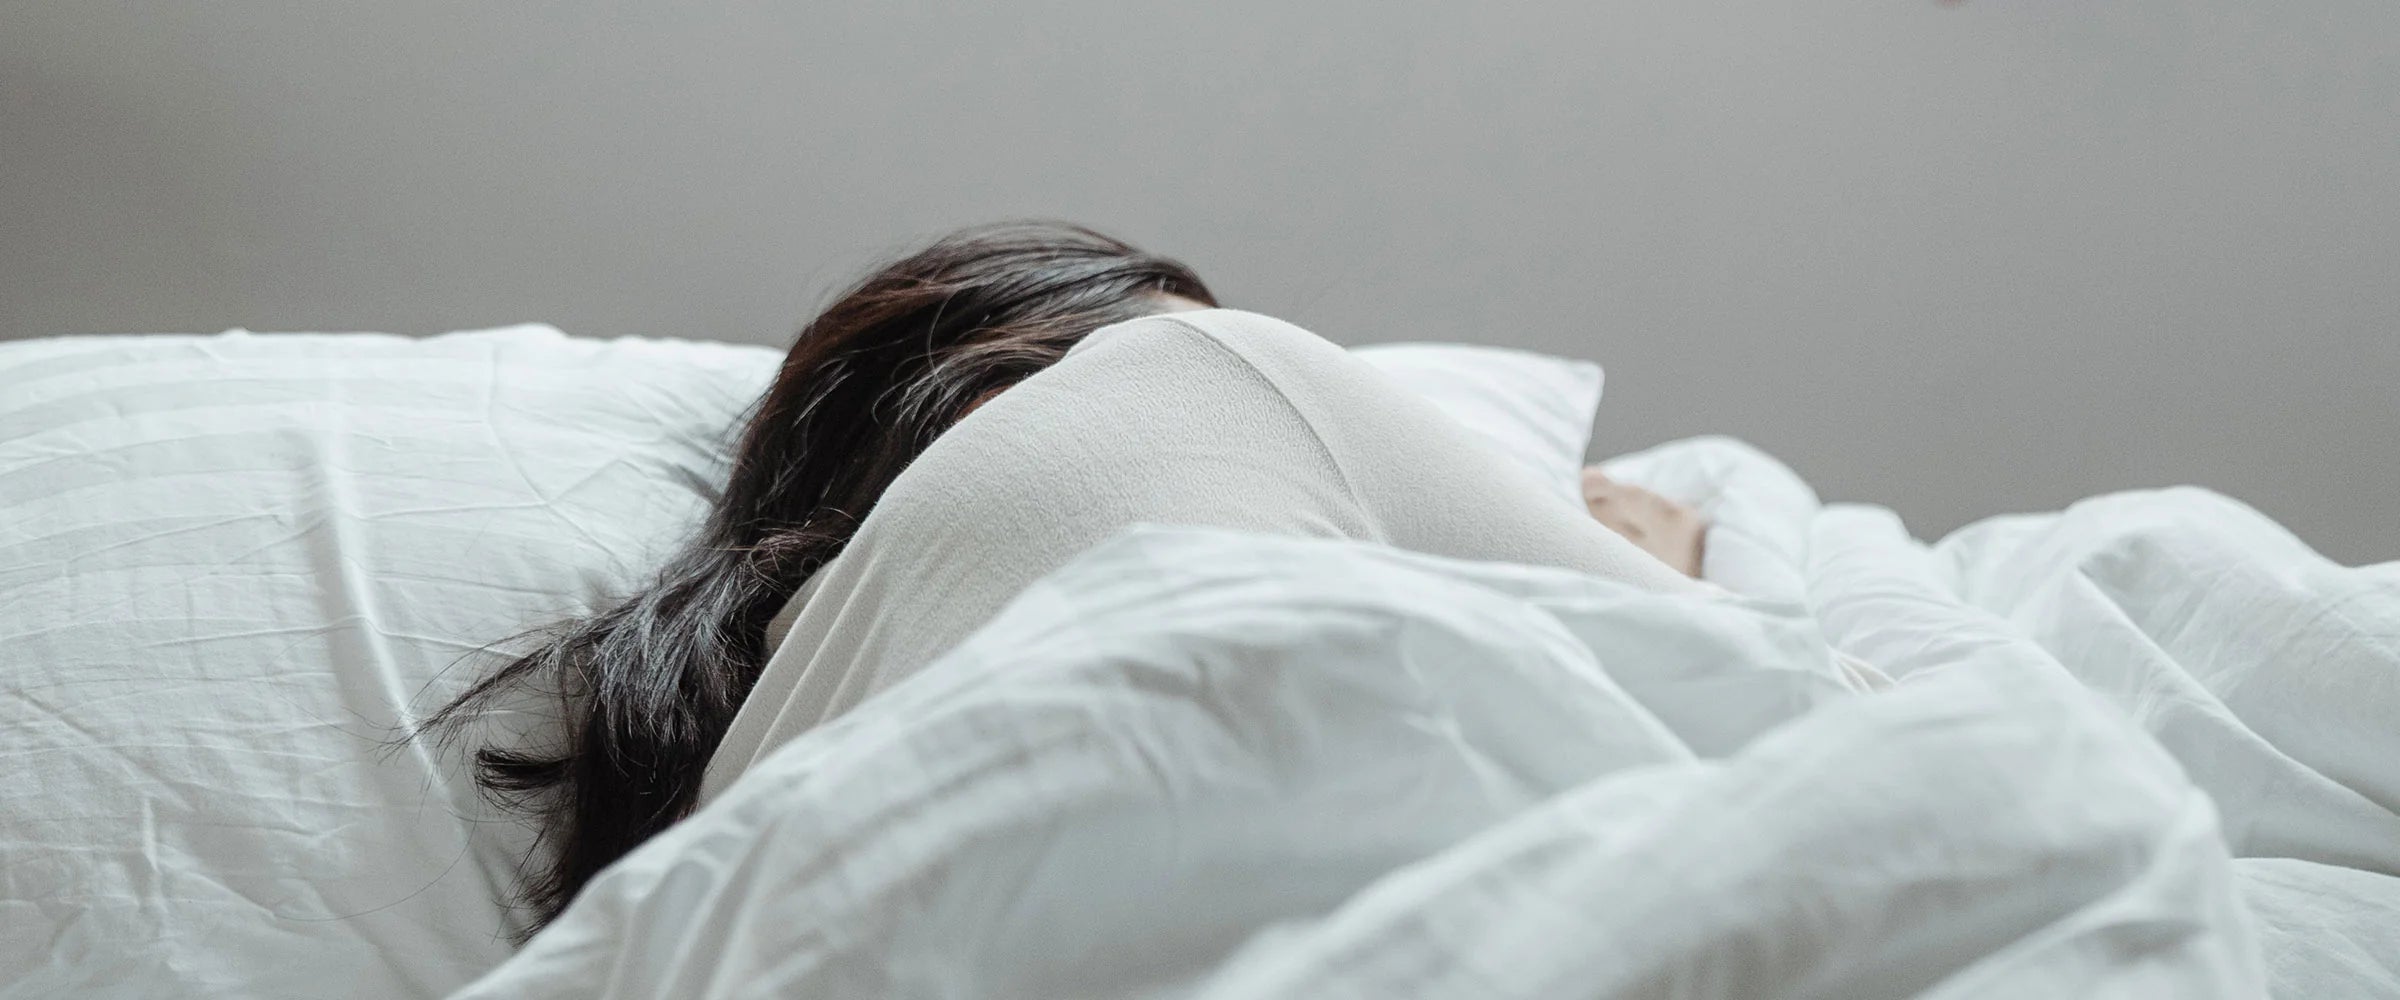 Dormire meglio: le 7 routine serali secondo gli esperti del sonno